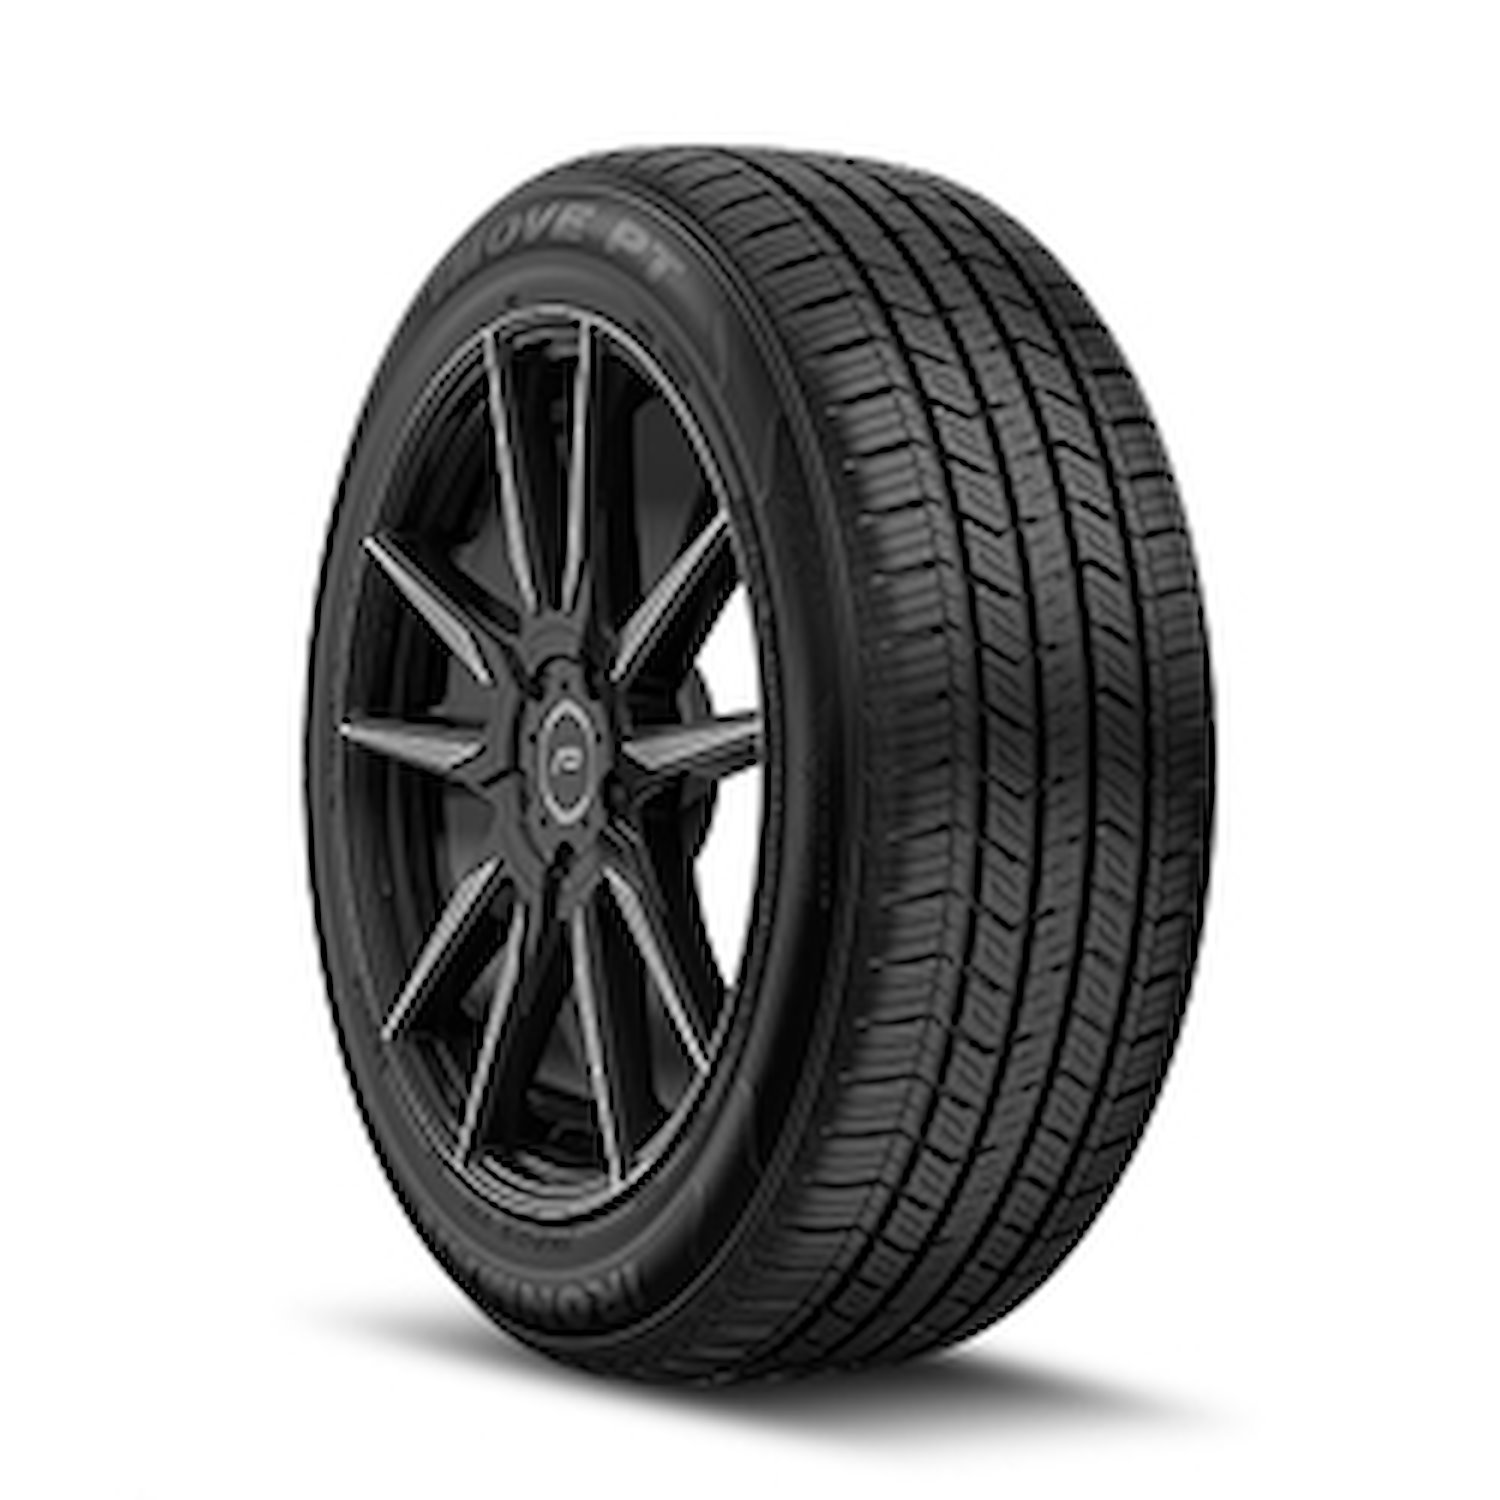 98472 iMOVE PT Tire, 225/65R17, 102H